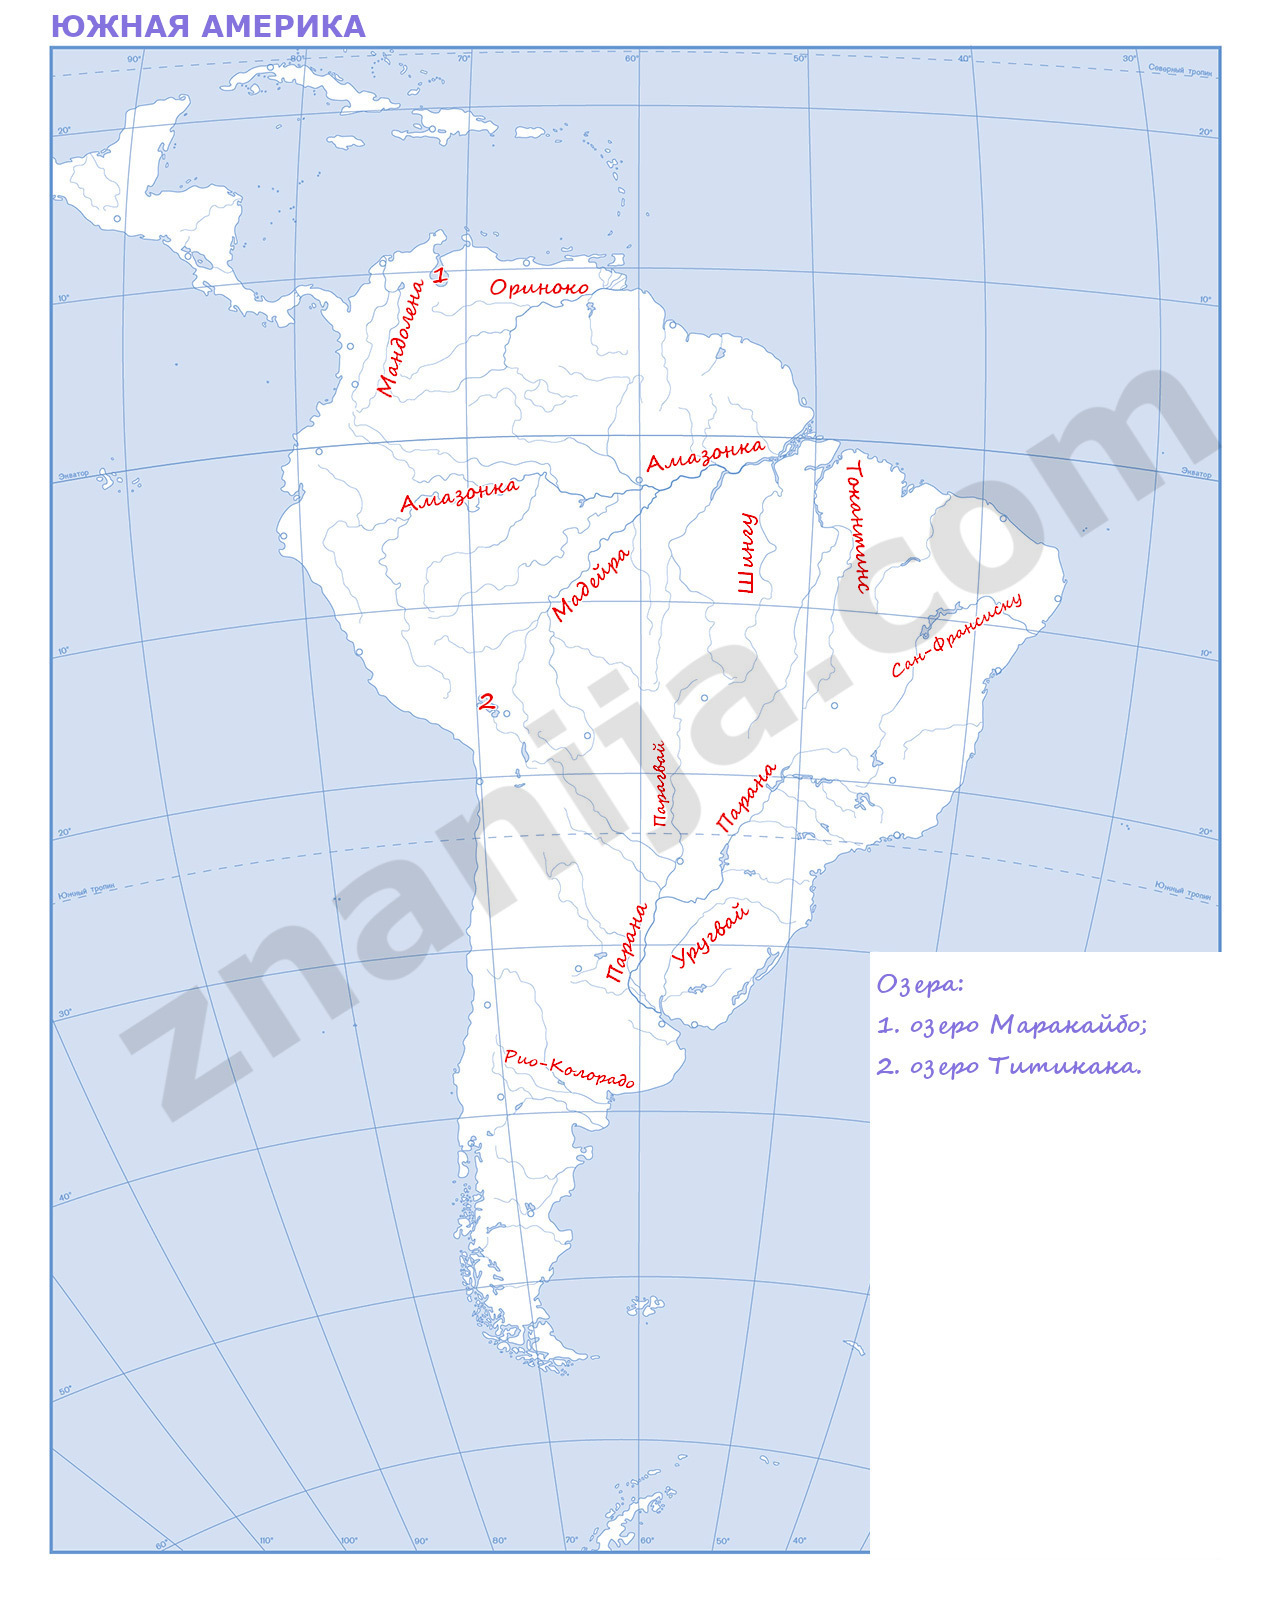 Крупнейшие реки южной америки на контурной карте. Реки Южной Америки на контурной карте 7 класс. Реки и озера Южной Америки на контурной карте. Озера Южной Америки на контурной карте. Контурная карта 7 класс Южная Америка горы, реки, озера.